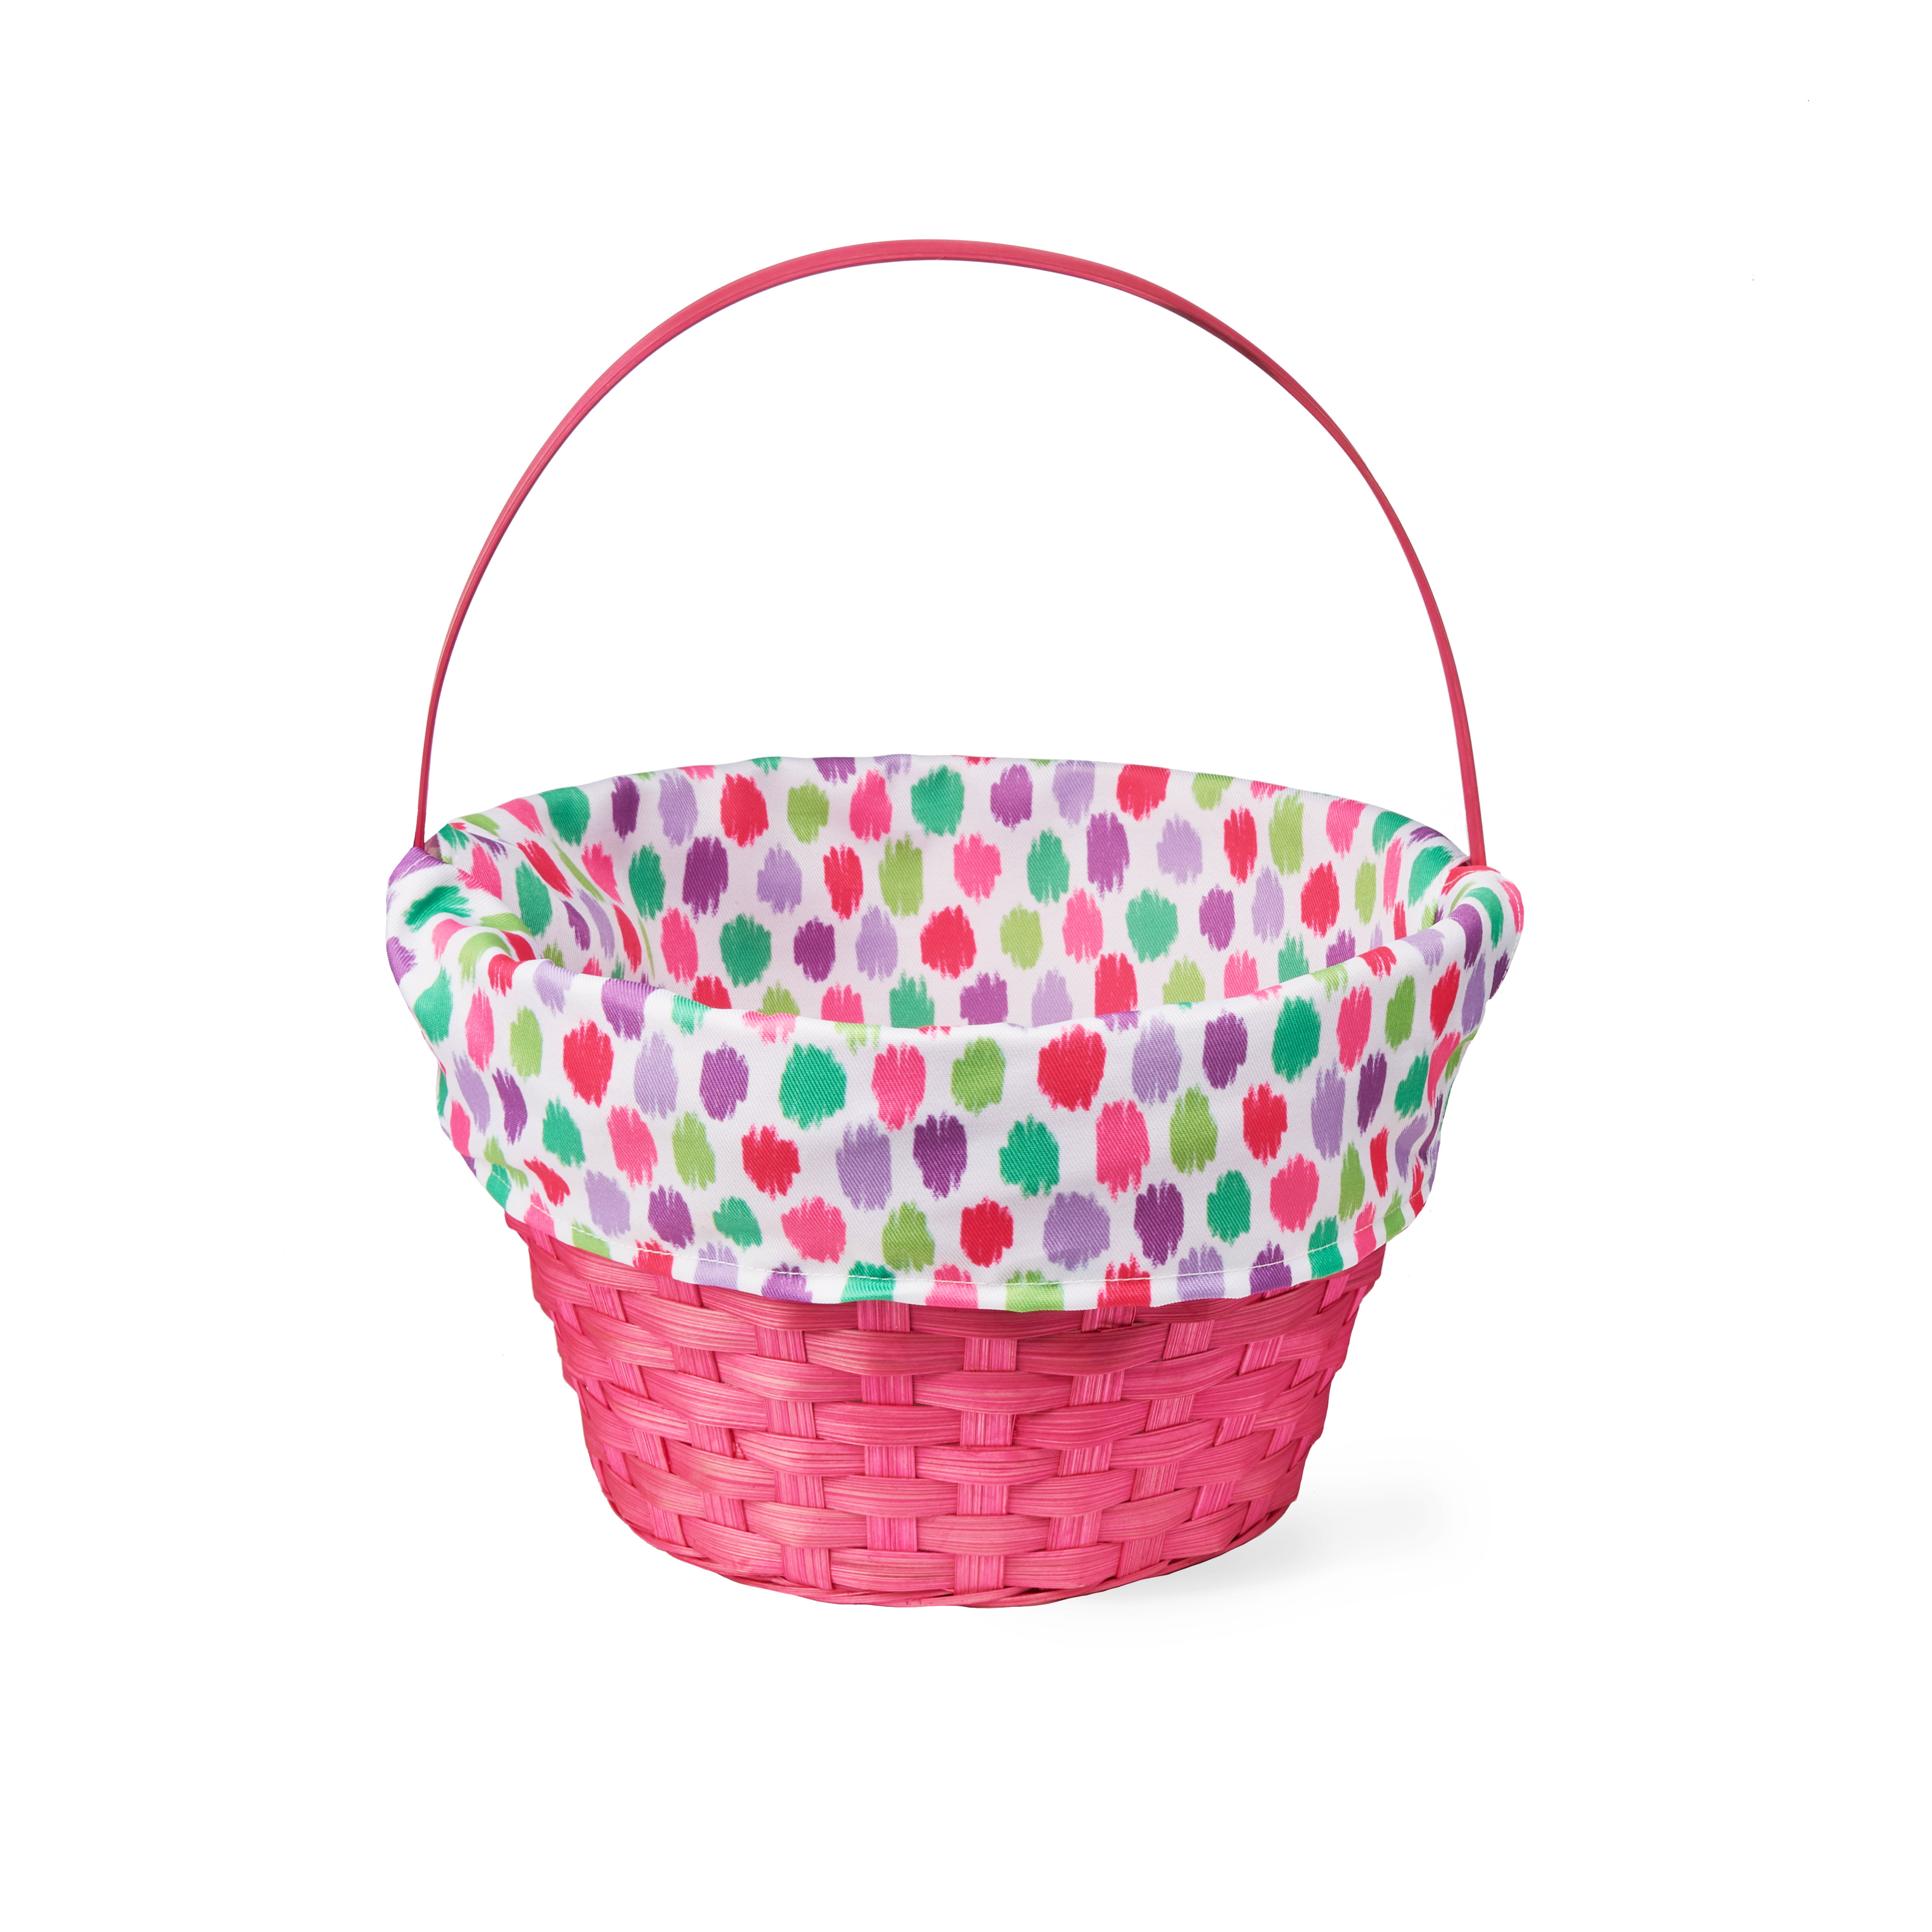 Basket NOT included Personalized Lavender Tiny Polka Dot Easter Basket Liner 